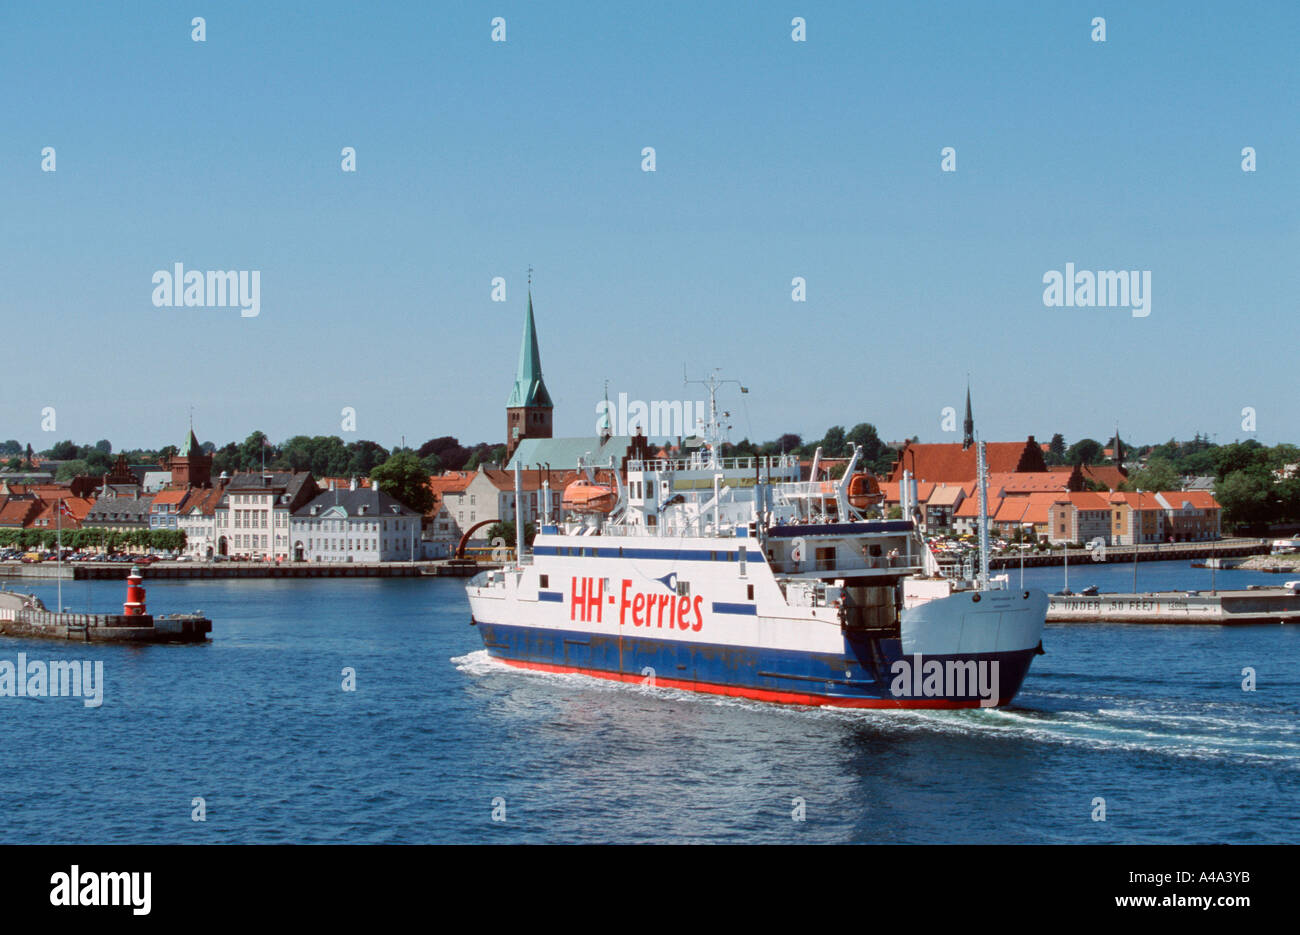 Ferry Boat / Helsingoer Foto Stock